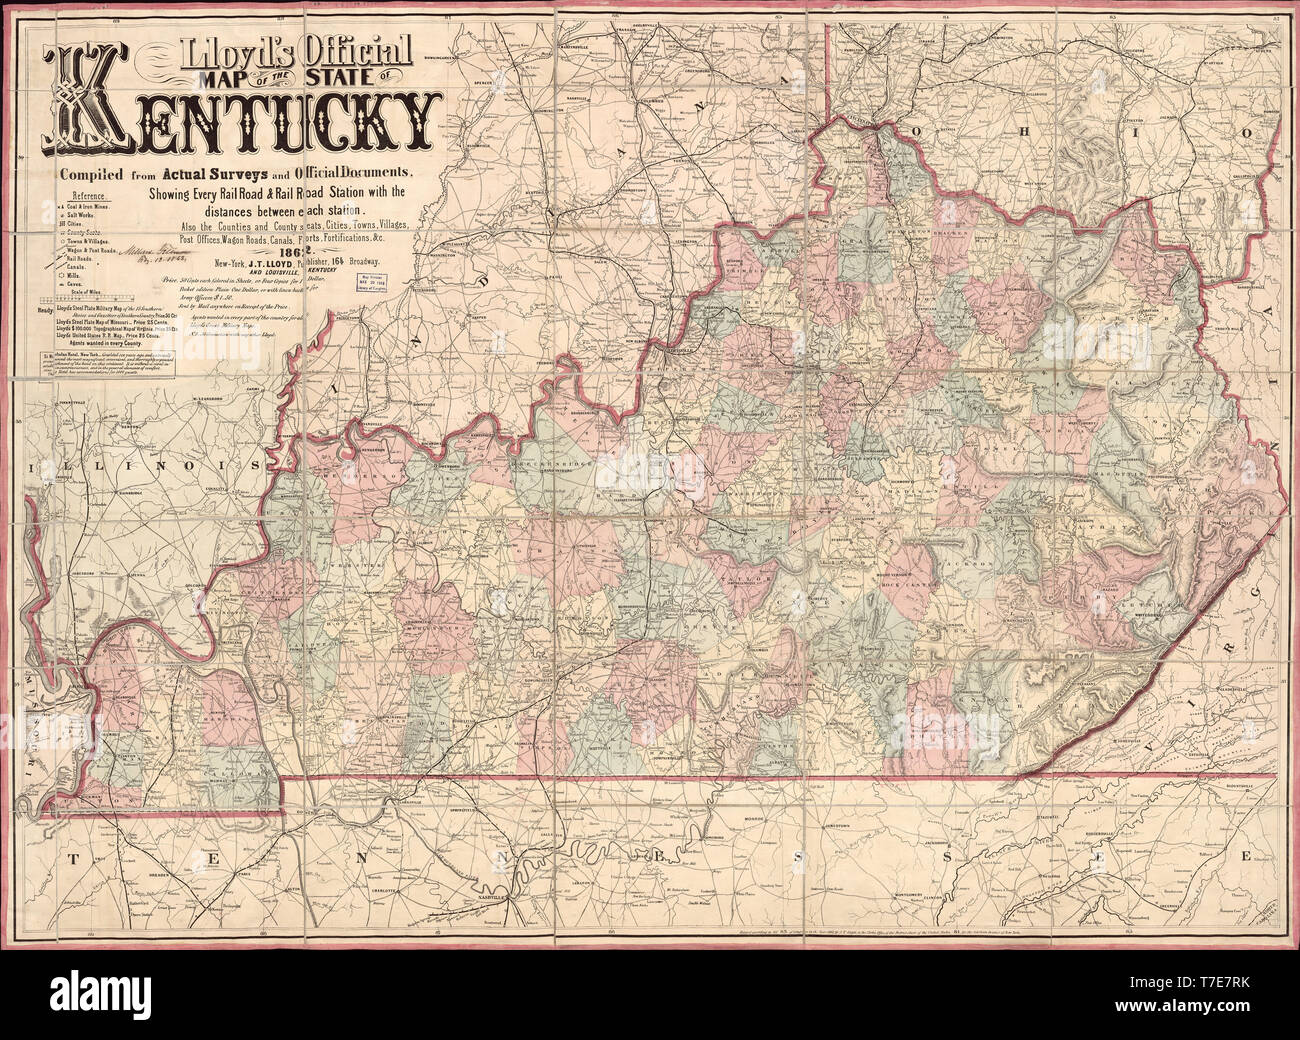 Lloyd's mappa ufficiale dello Stato del Kentucky, pubblicato da James T. Lloyd, New York, 1862 Foto Stock